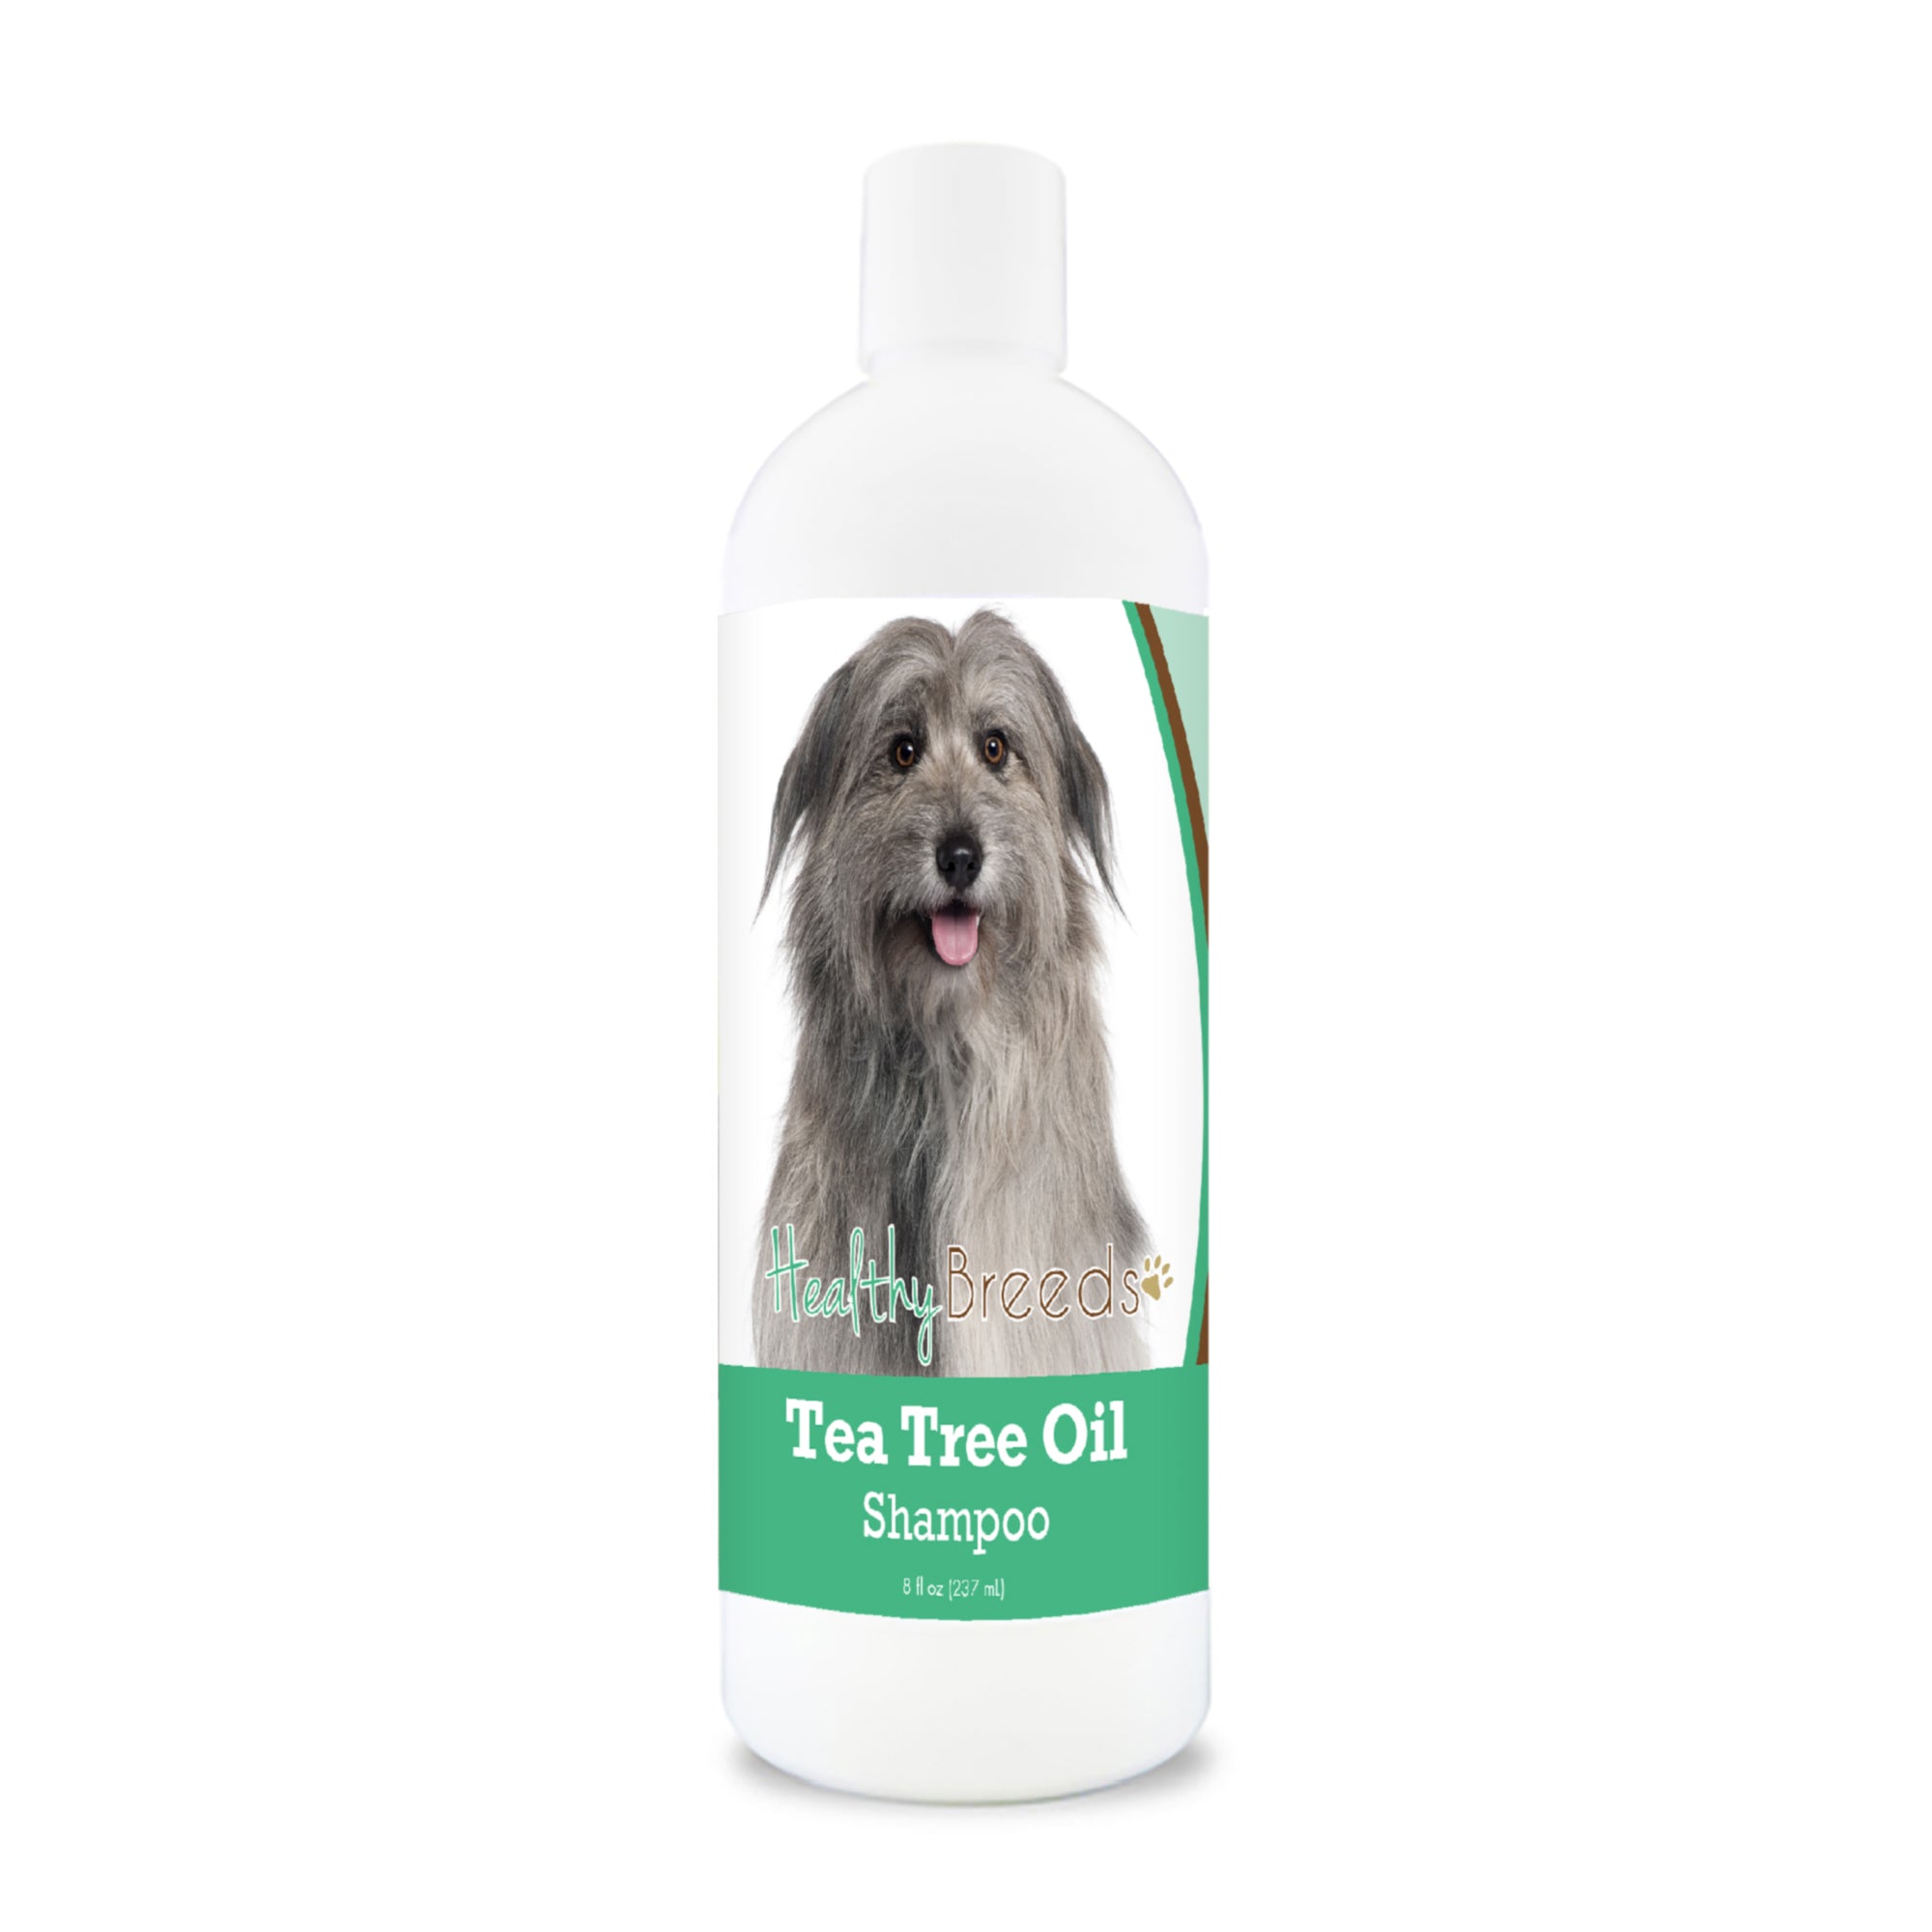 Pyrenean Shepherd Tea Tree Oil Shampoo 8 oz